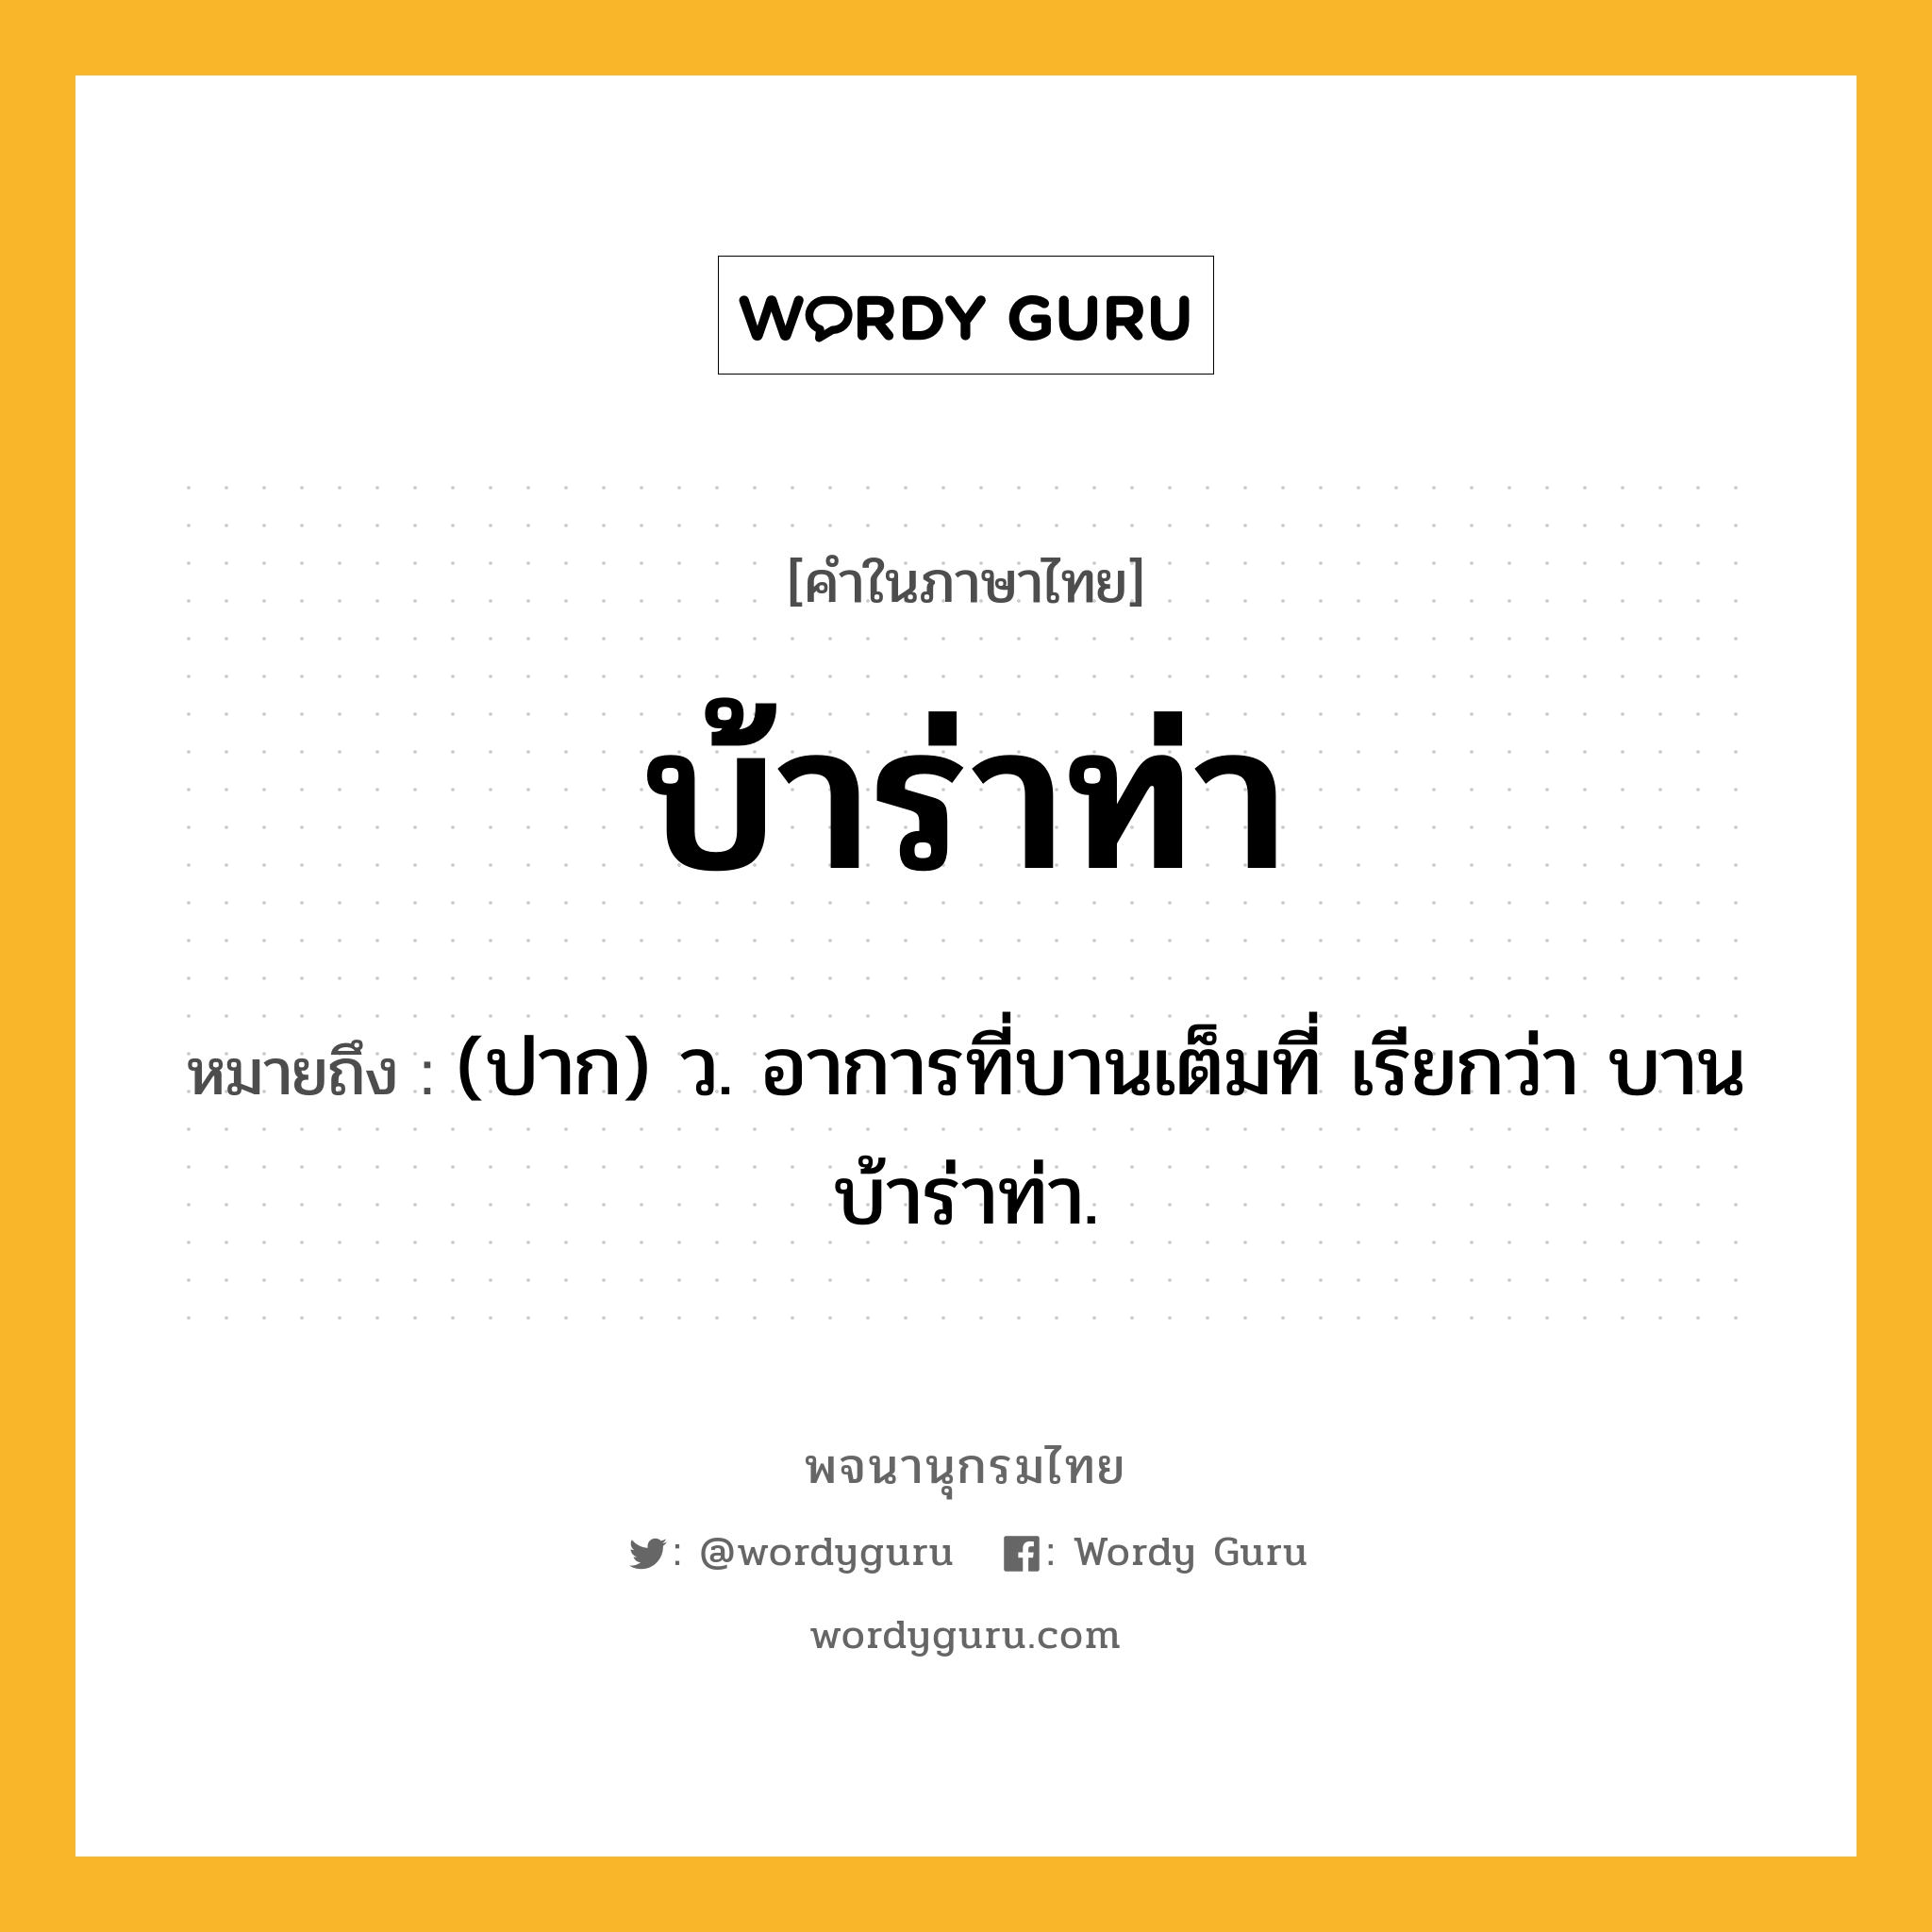 บ้าร่าท่า ความหมาย หมายถึงอะไร?, คำในภาษาไทย บ้าร่าท่า หมายถึง (ปาก) ว. อาการที่บานเต็มที่ เรียกว่า บานบ้าร่าท่า.